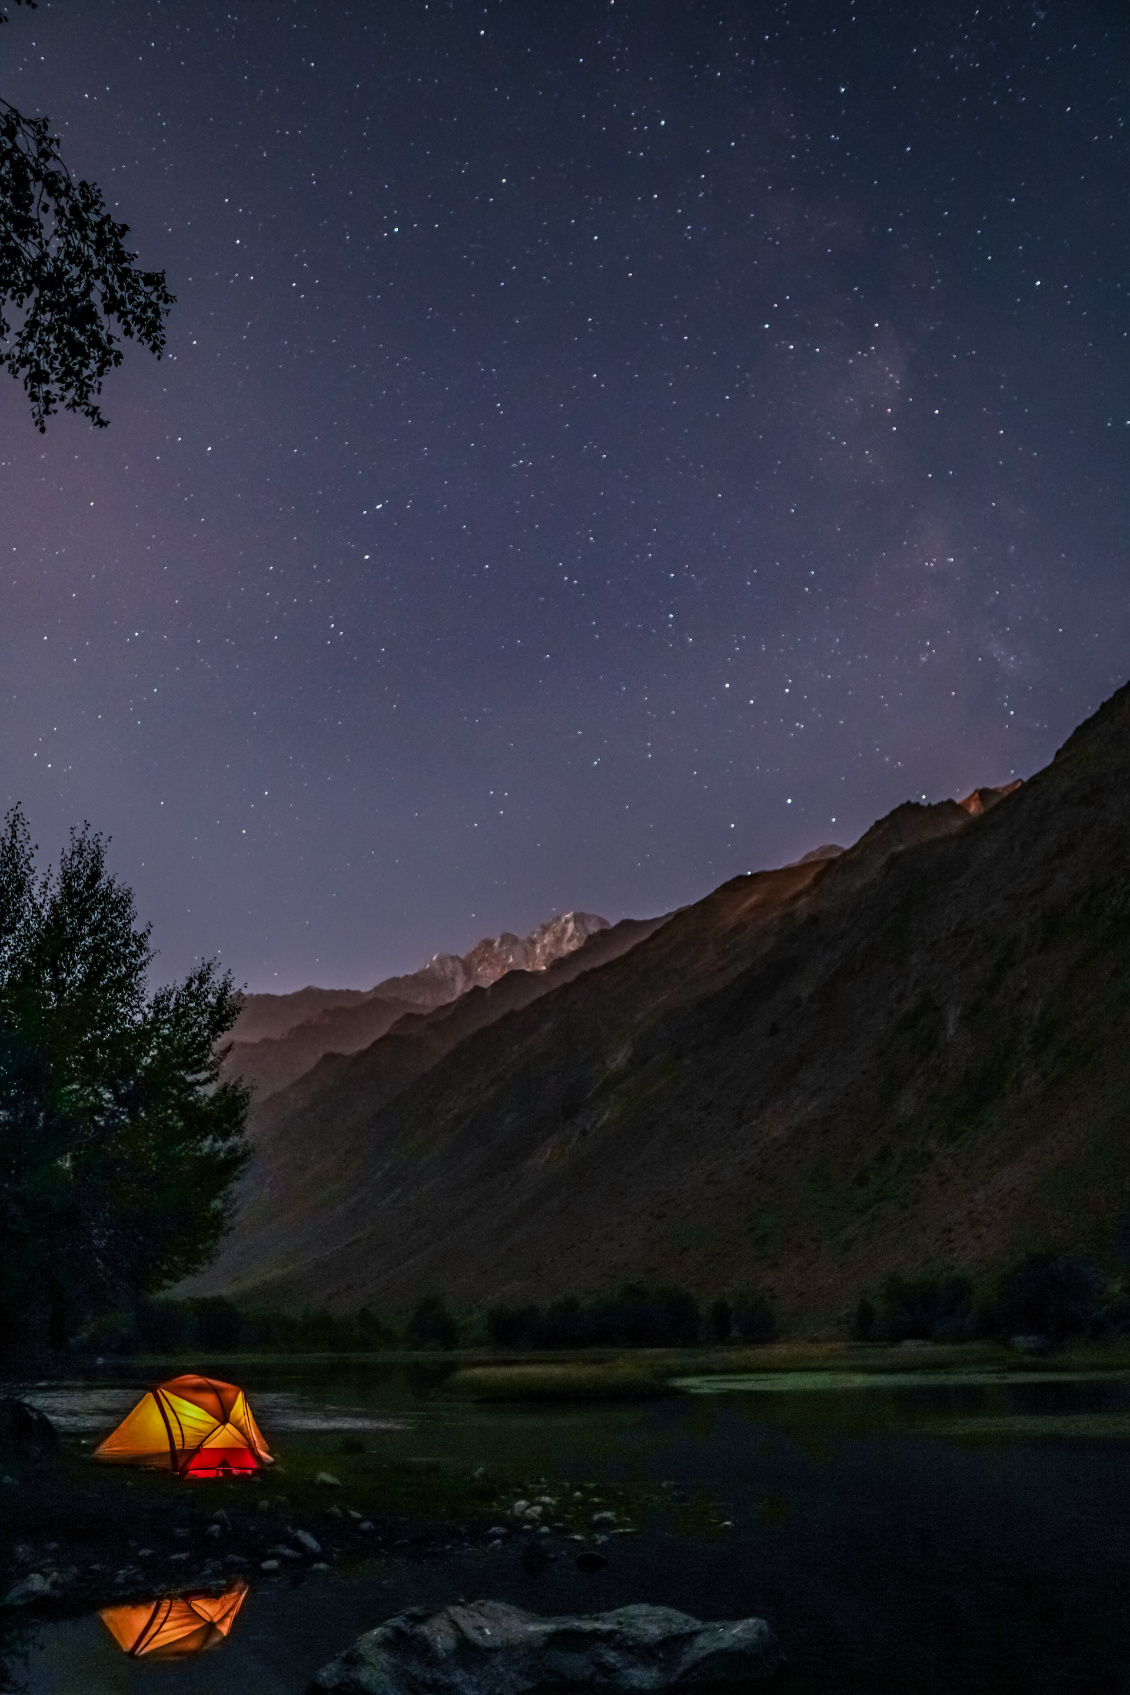 #66 Matthieu Sion.
@matthieu_sion
Lac étoilé. Itinérance dans les vallées sinueuses du Tadjikistan. Un lac et ses majestueuses montagnes se dévoilent sous la lueur des étoiles.